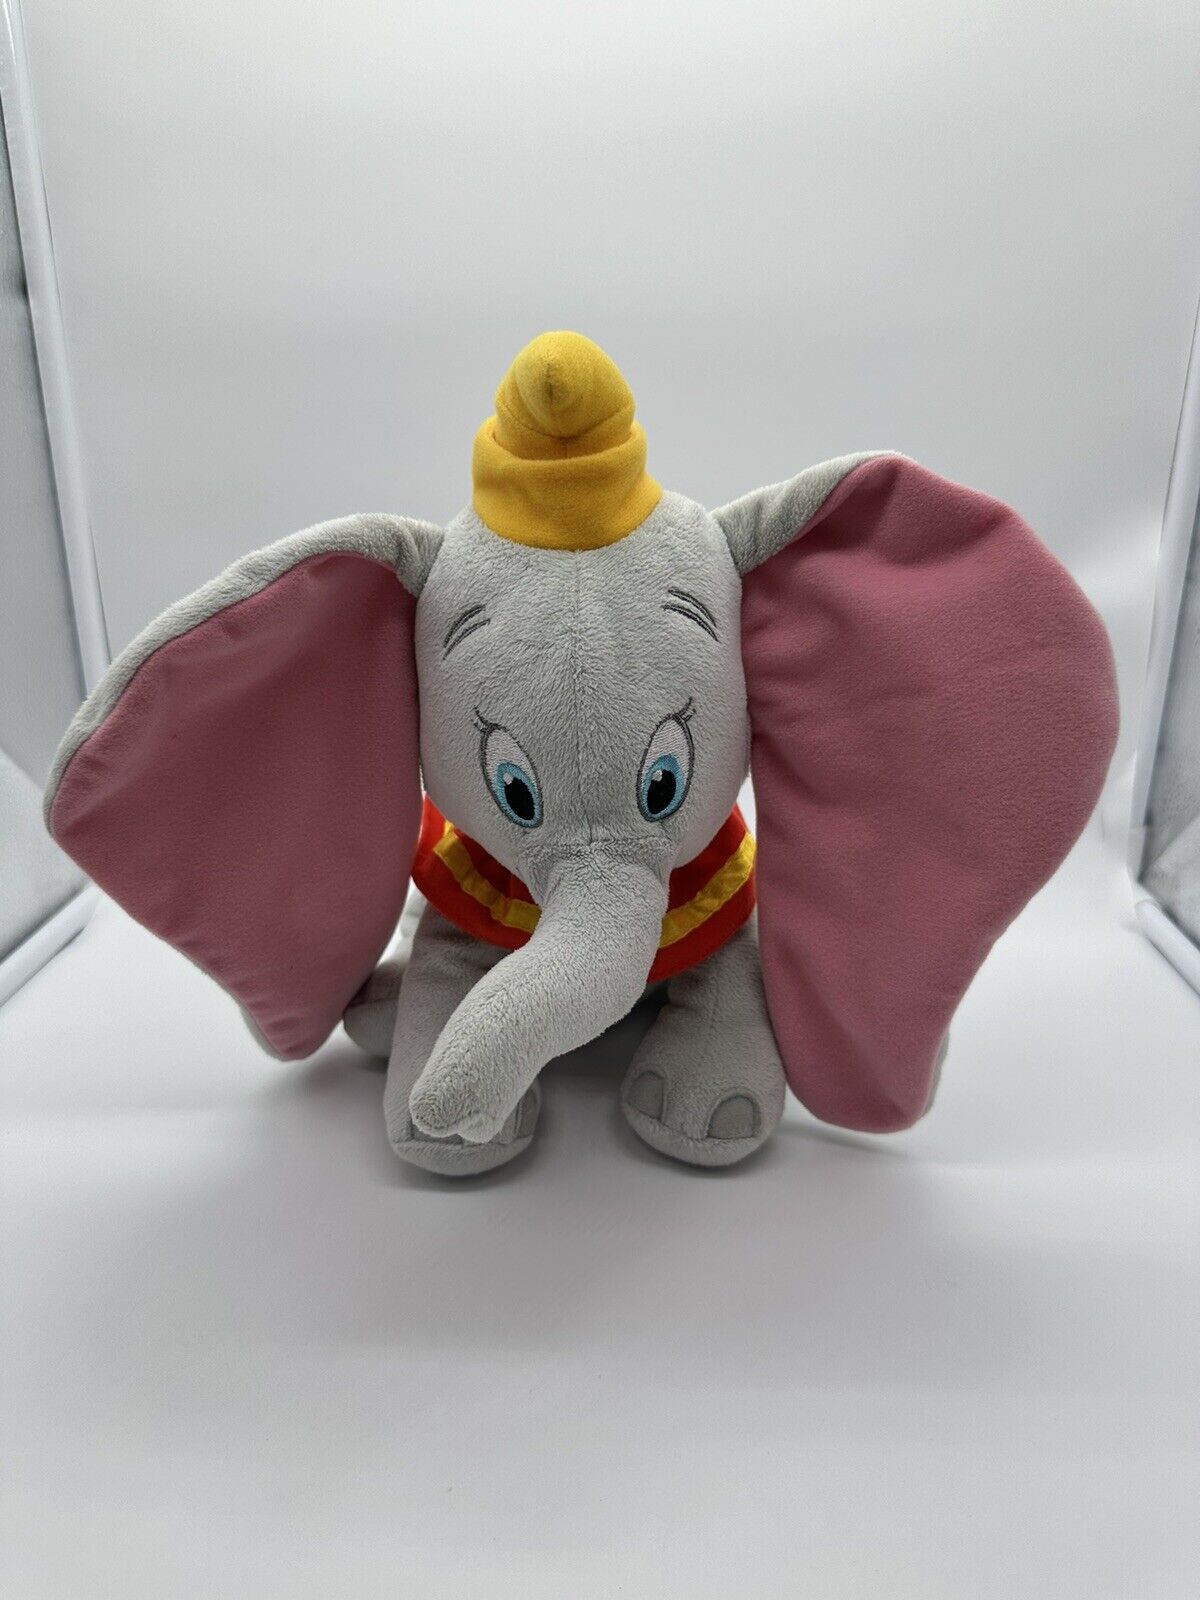 Disney Dumbo Plush Stuffed Animal Elephant Kohl's Cares